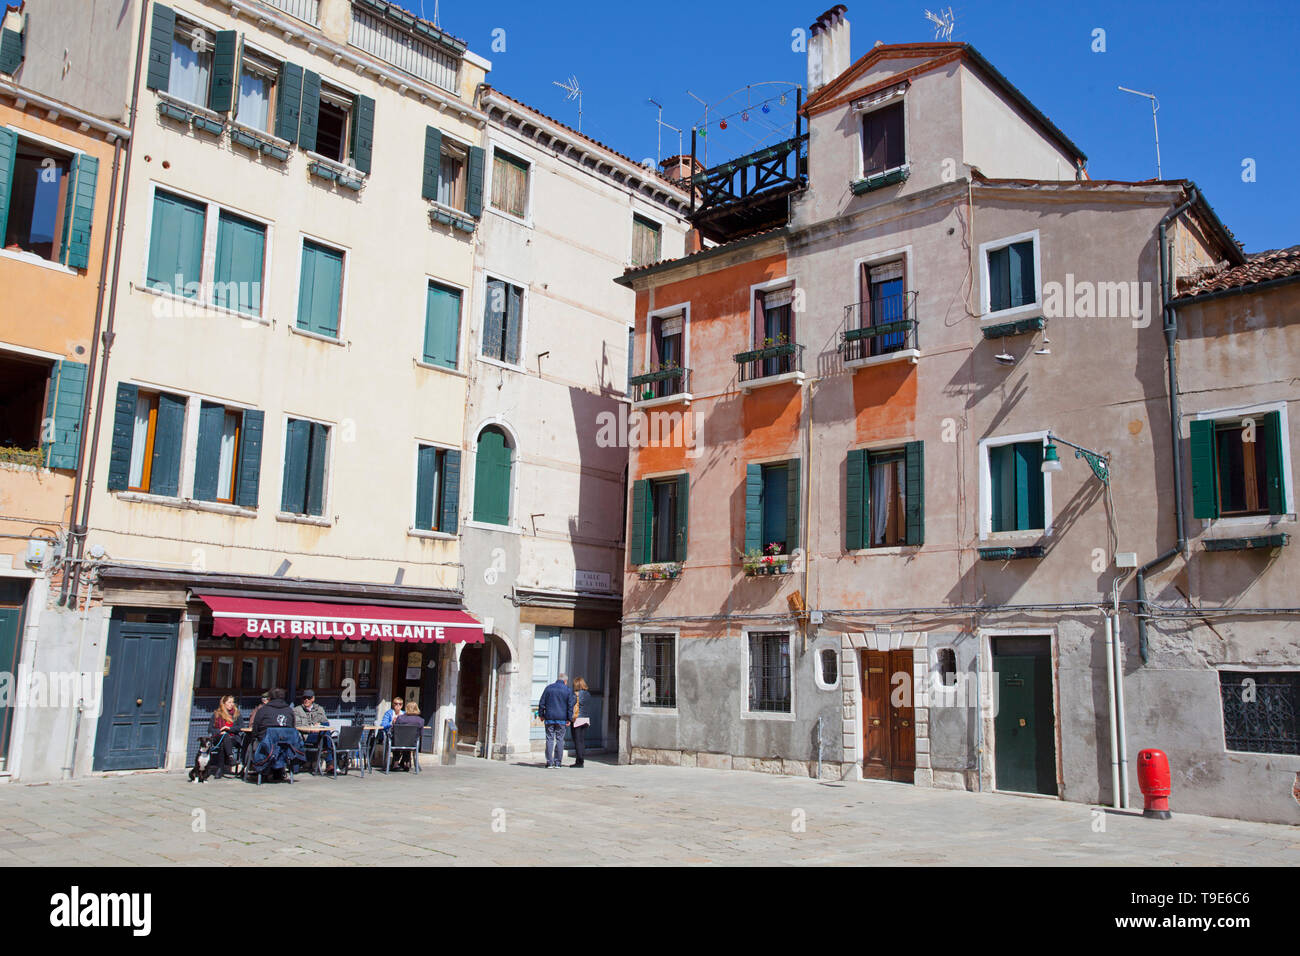 Arquitectura veneciana y la barra de Brillo parlante Foto de stock